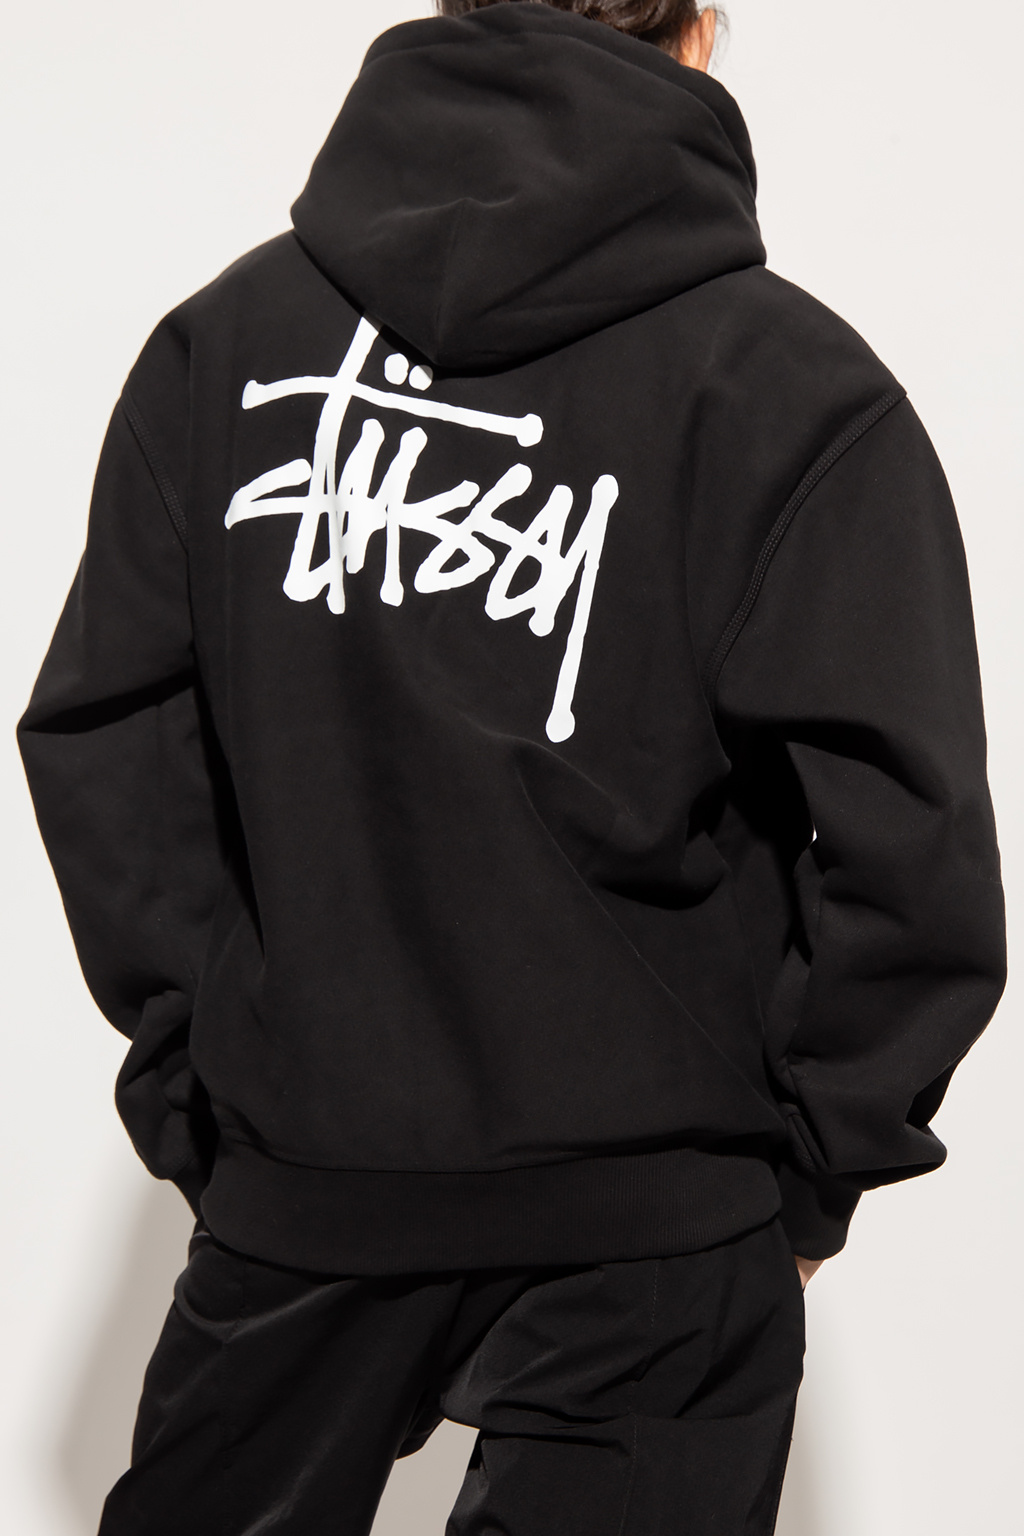 Stussy MA-1-printed hoodie